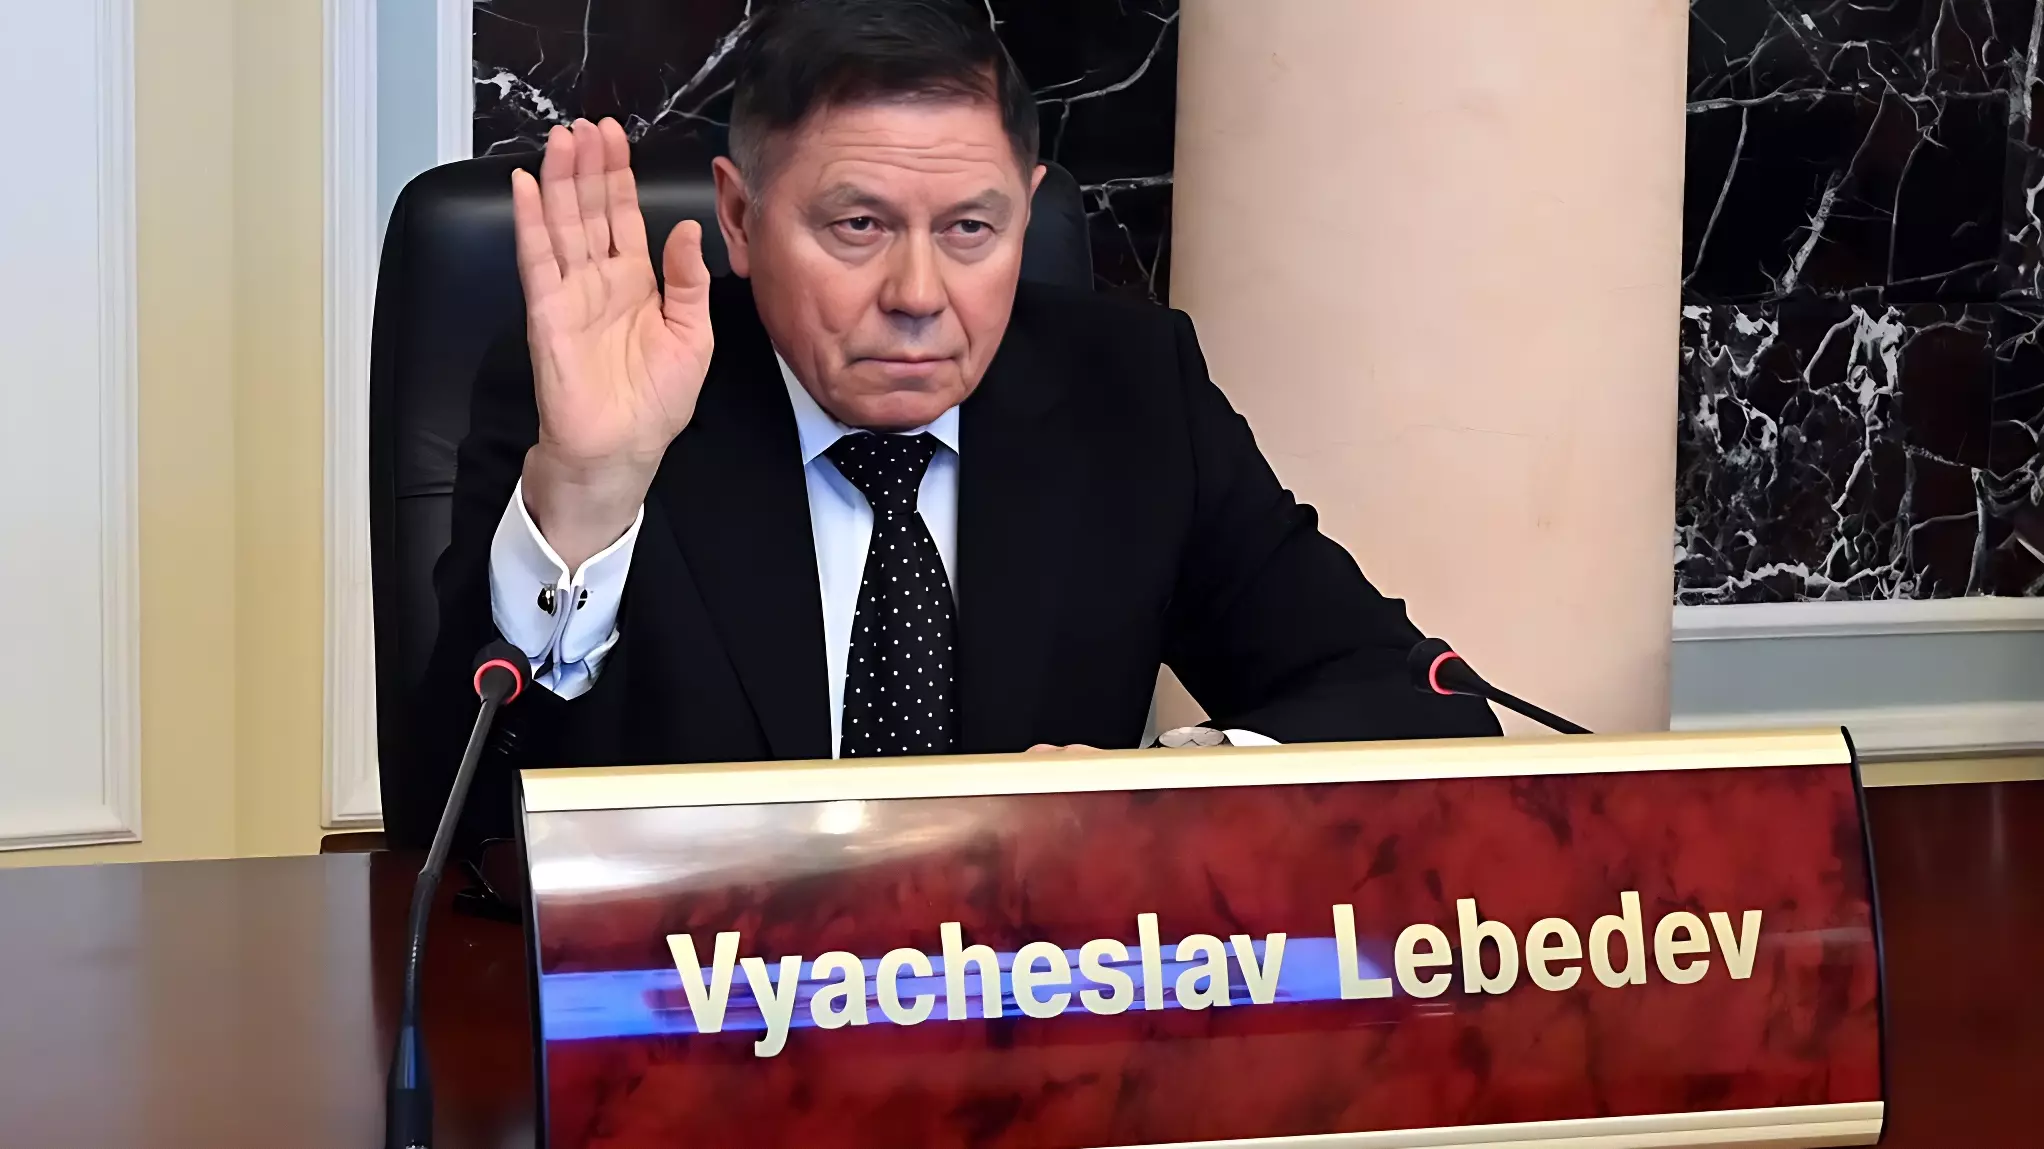 Какую работу вел в Приморье бывший председатель ВС РФ Вячеслав Лебедев?